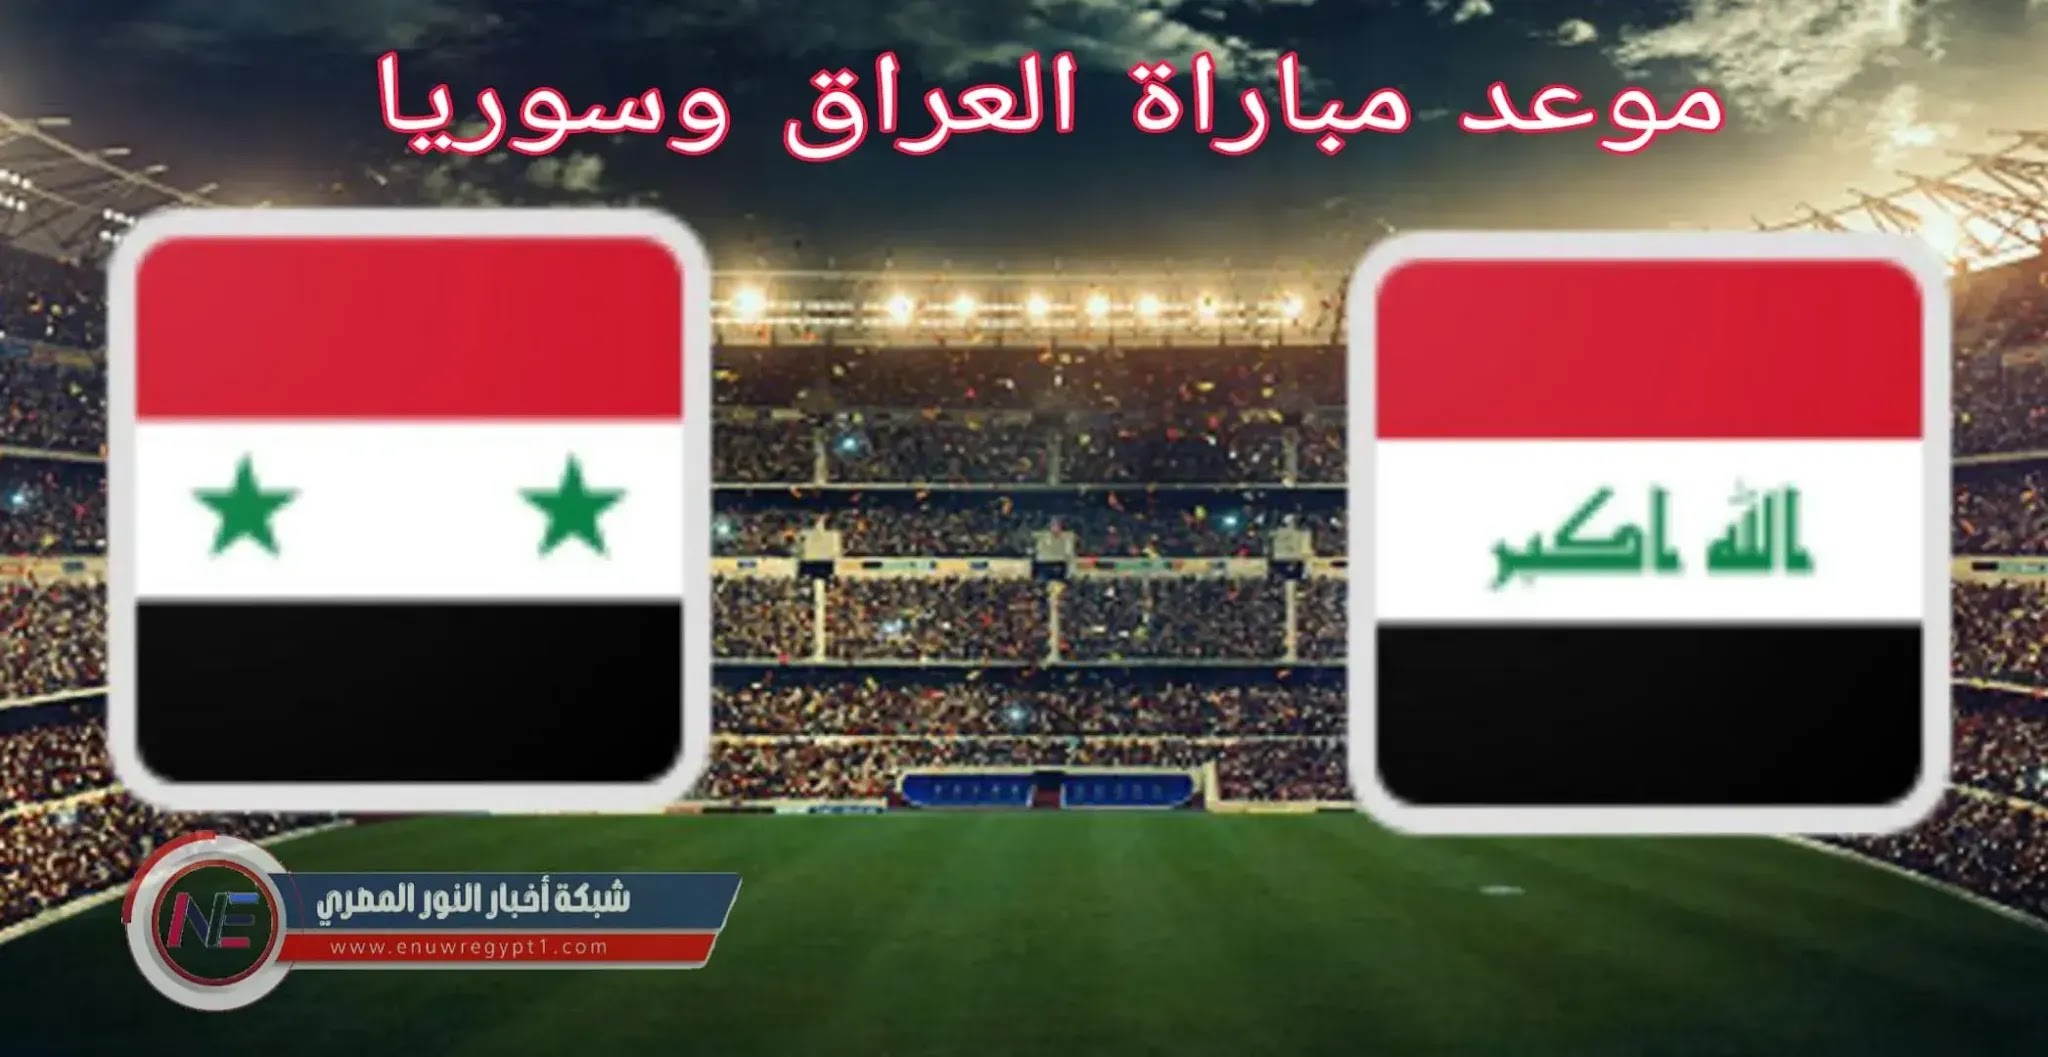 تعرف علي موعد مباراة العراق وسوريا في تصفيات آسيا المؤهلة الي كأس العالم 2022 و القنوات الناقلة للمباراة